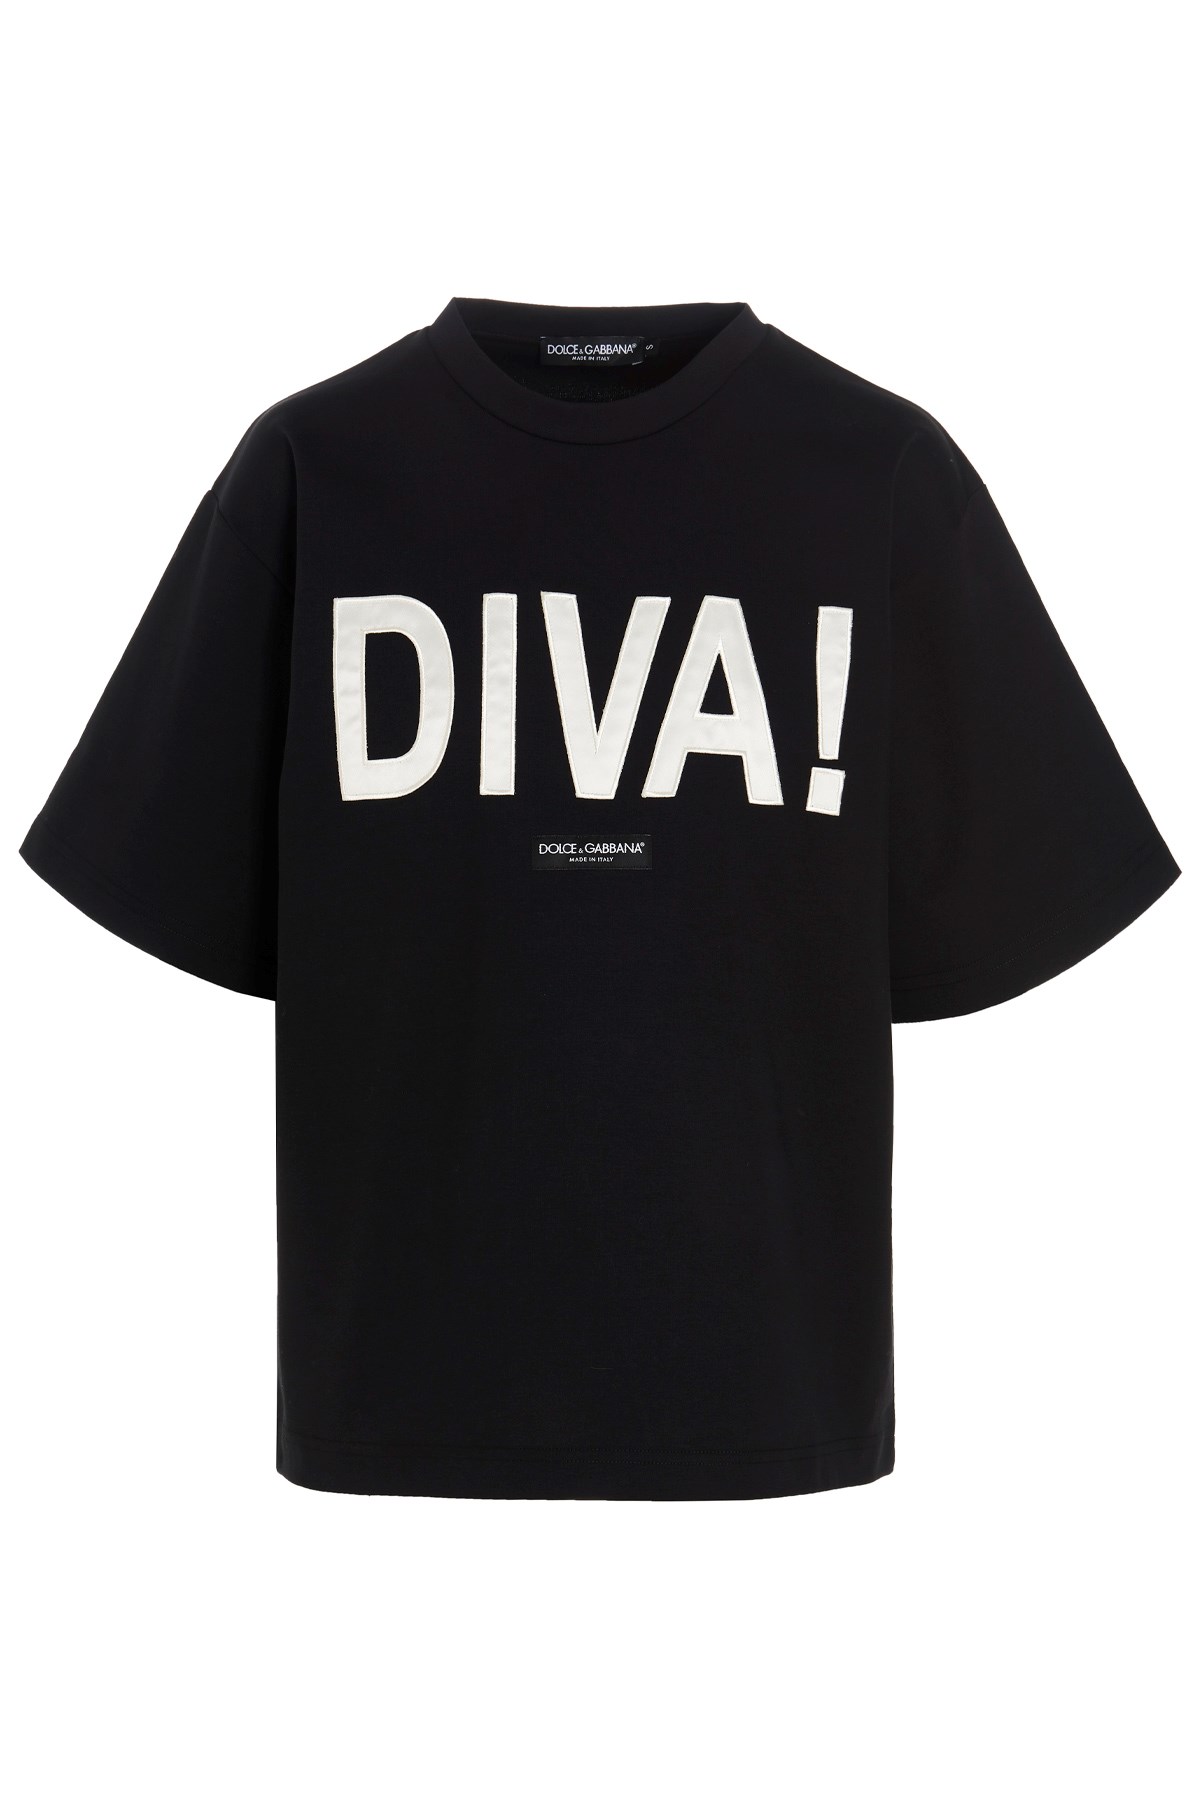 DOLCE & GABBANA ‘Diva’ T-Shirt